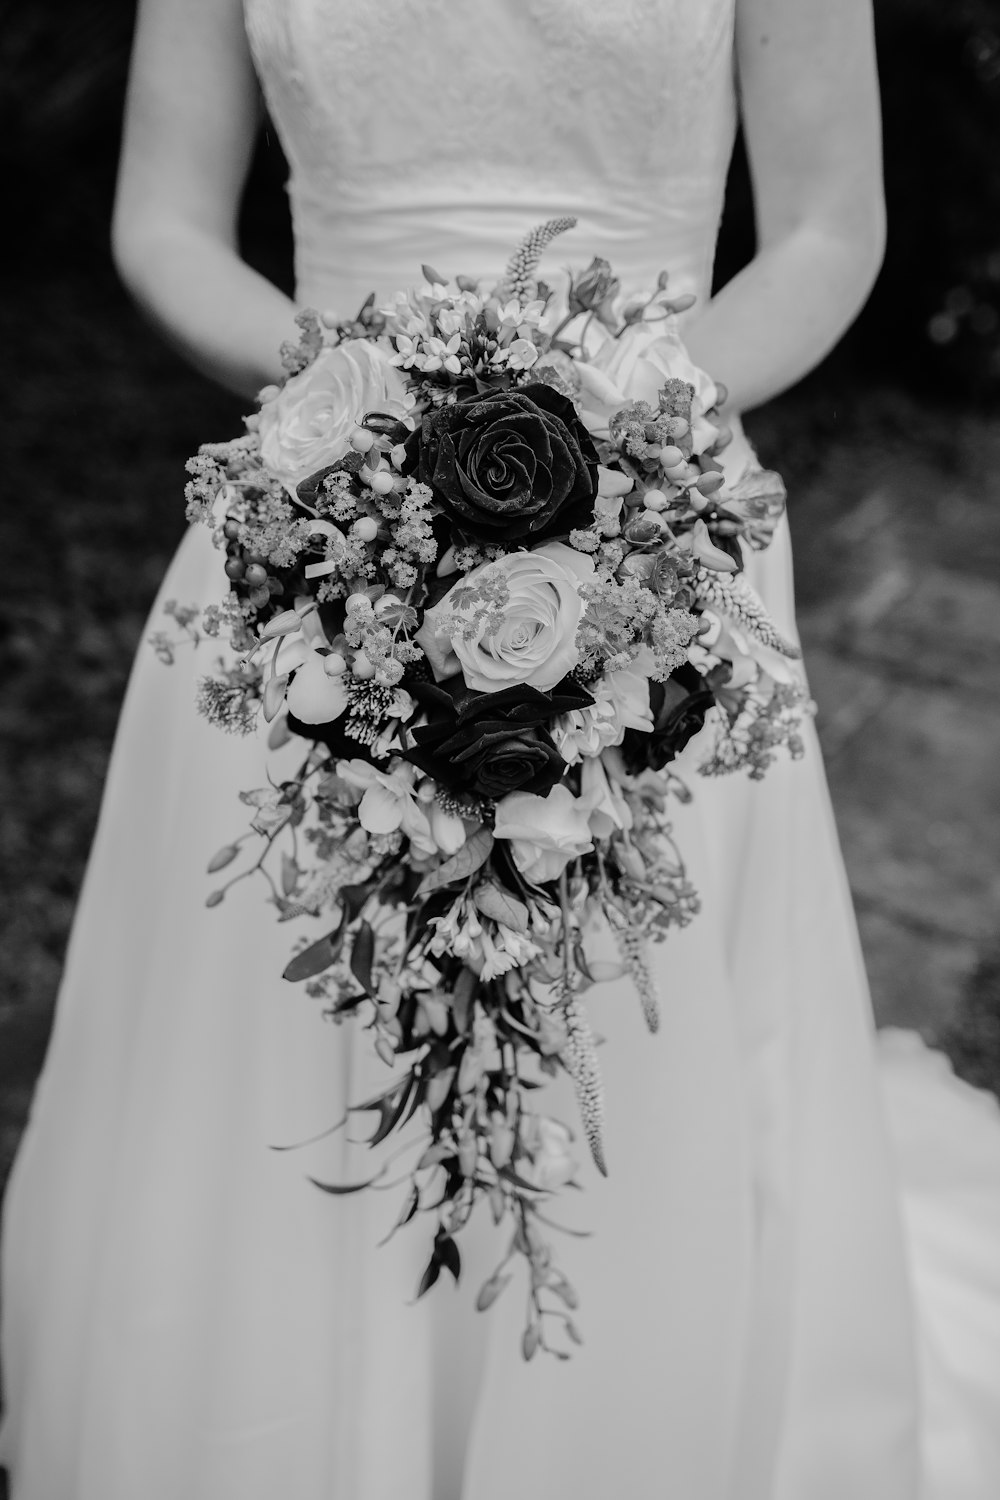 fotografia in scala di grigi di donna in abito da sposa